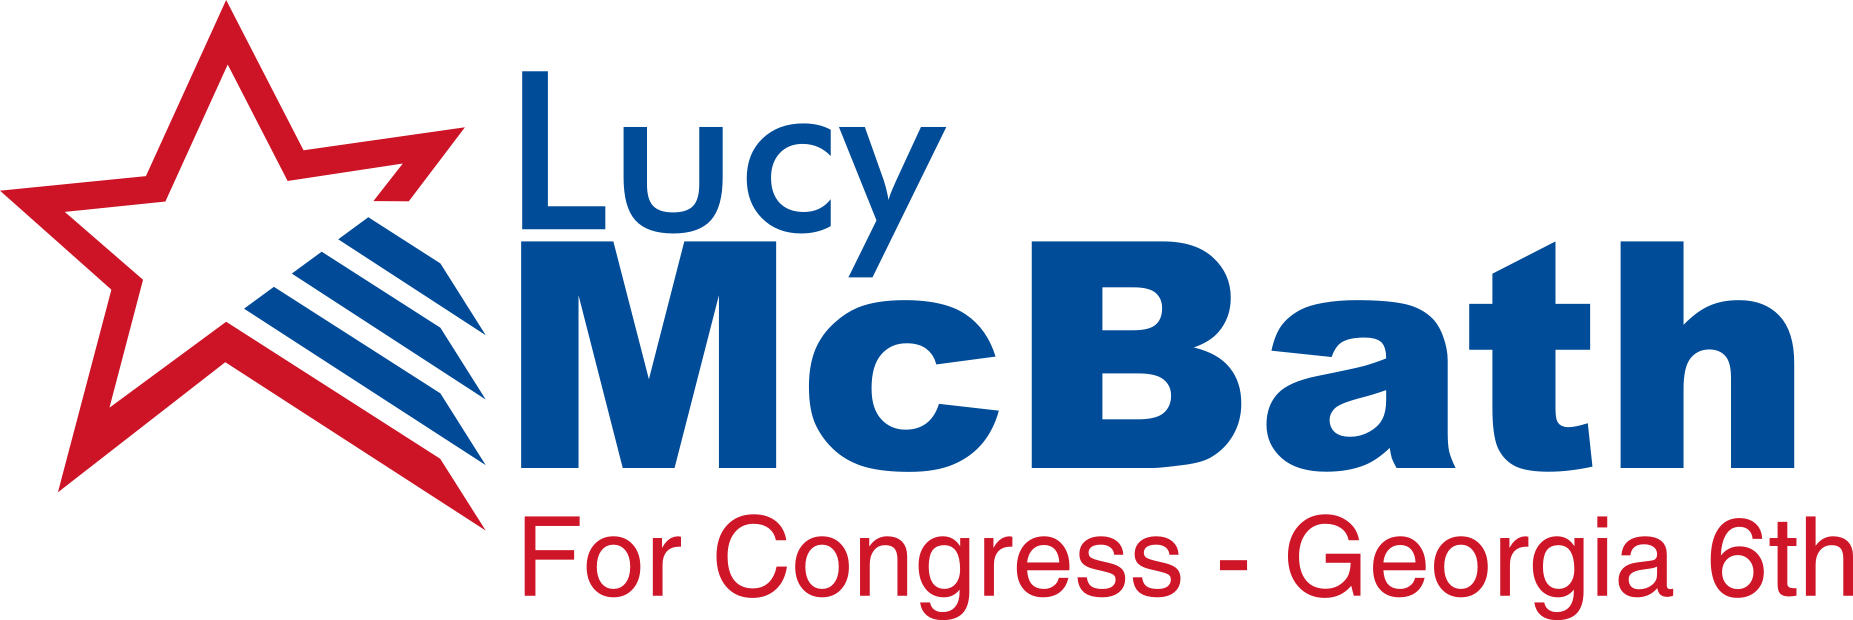 Lucia McBath for Congress